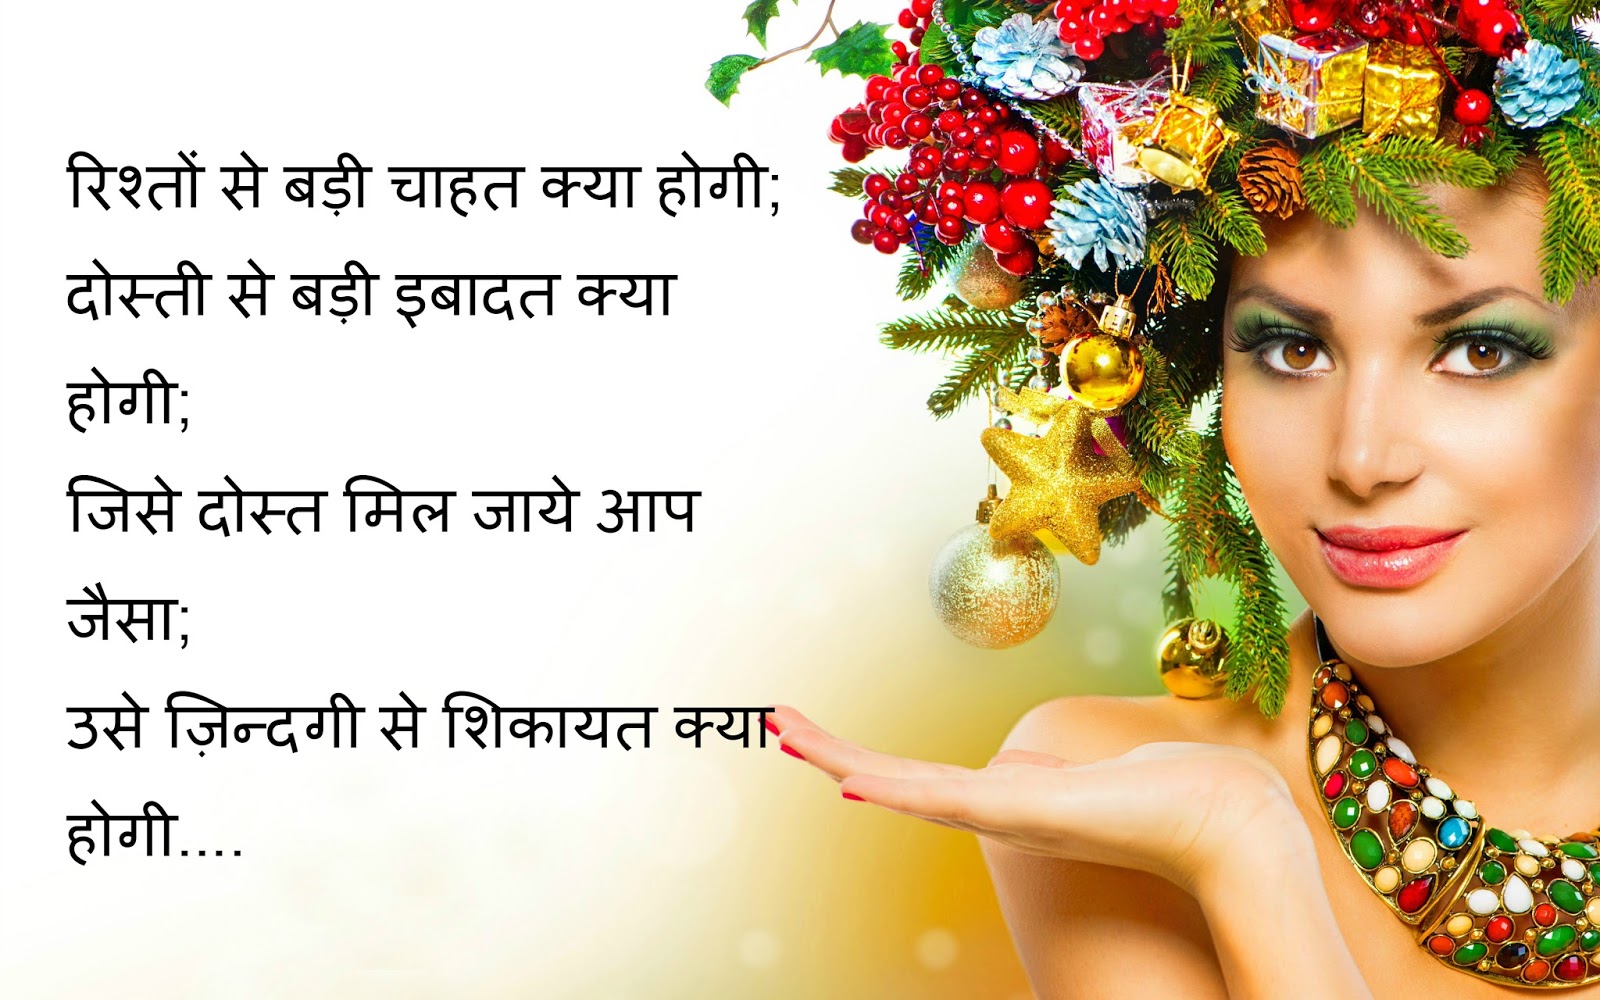 Hindi Love Shayari Wallpaper Images Gallery - Christmas Makeup Poster , HD Wallpaper & Backgrounds